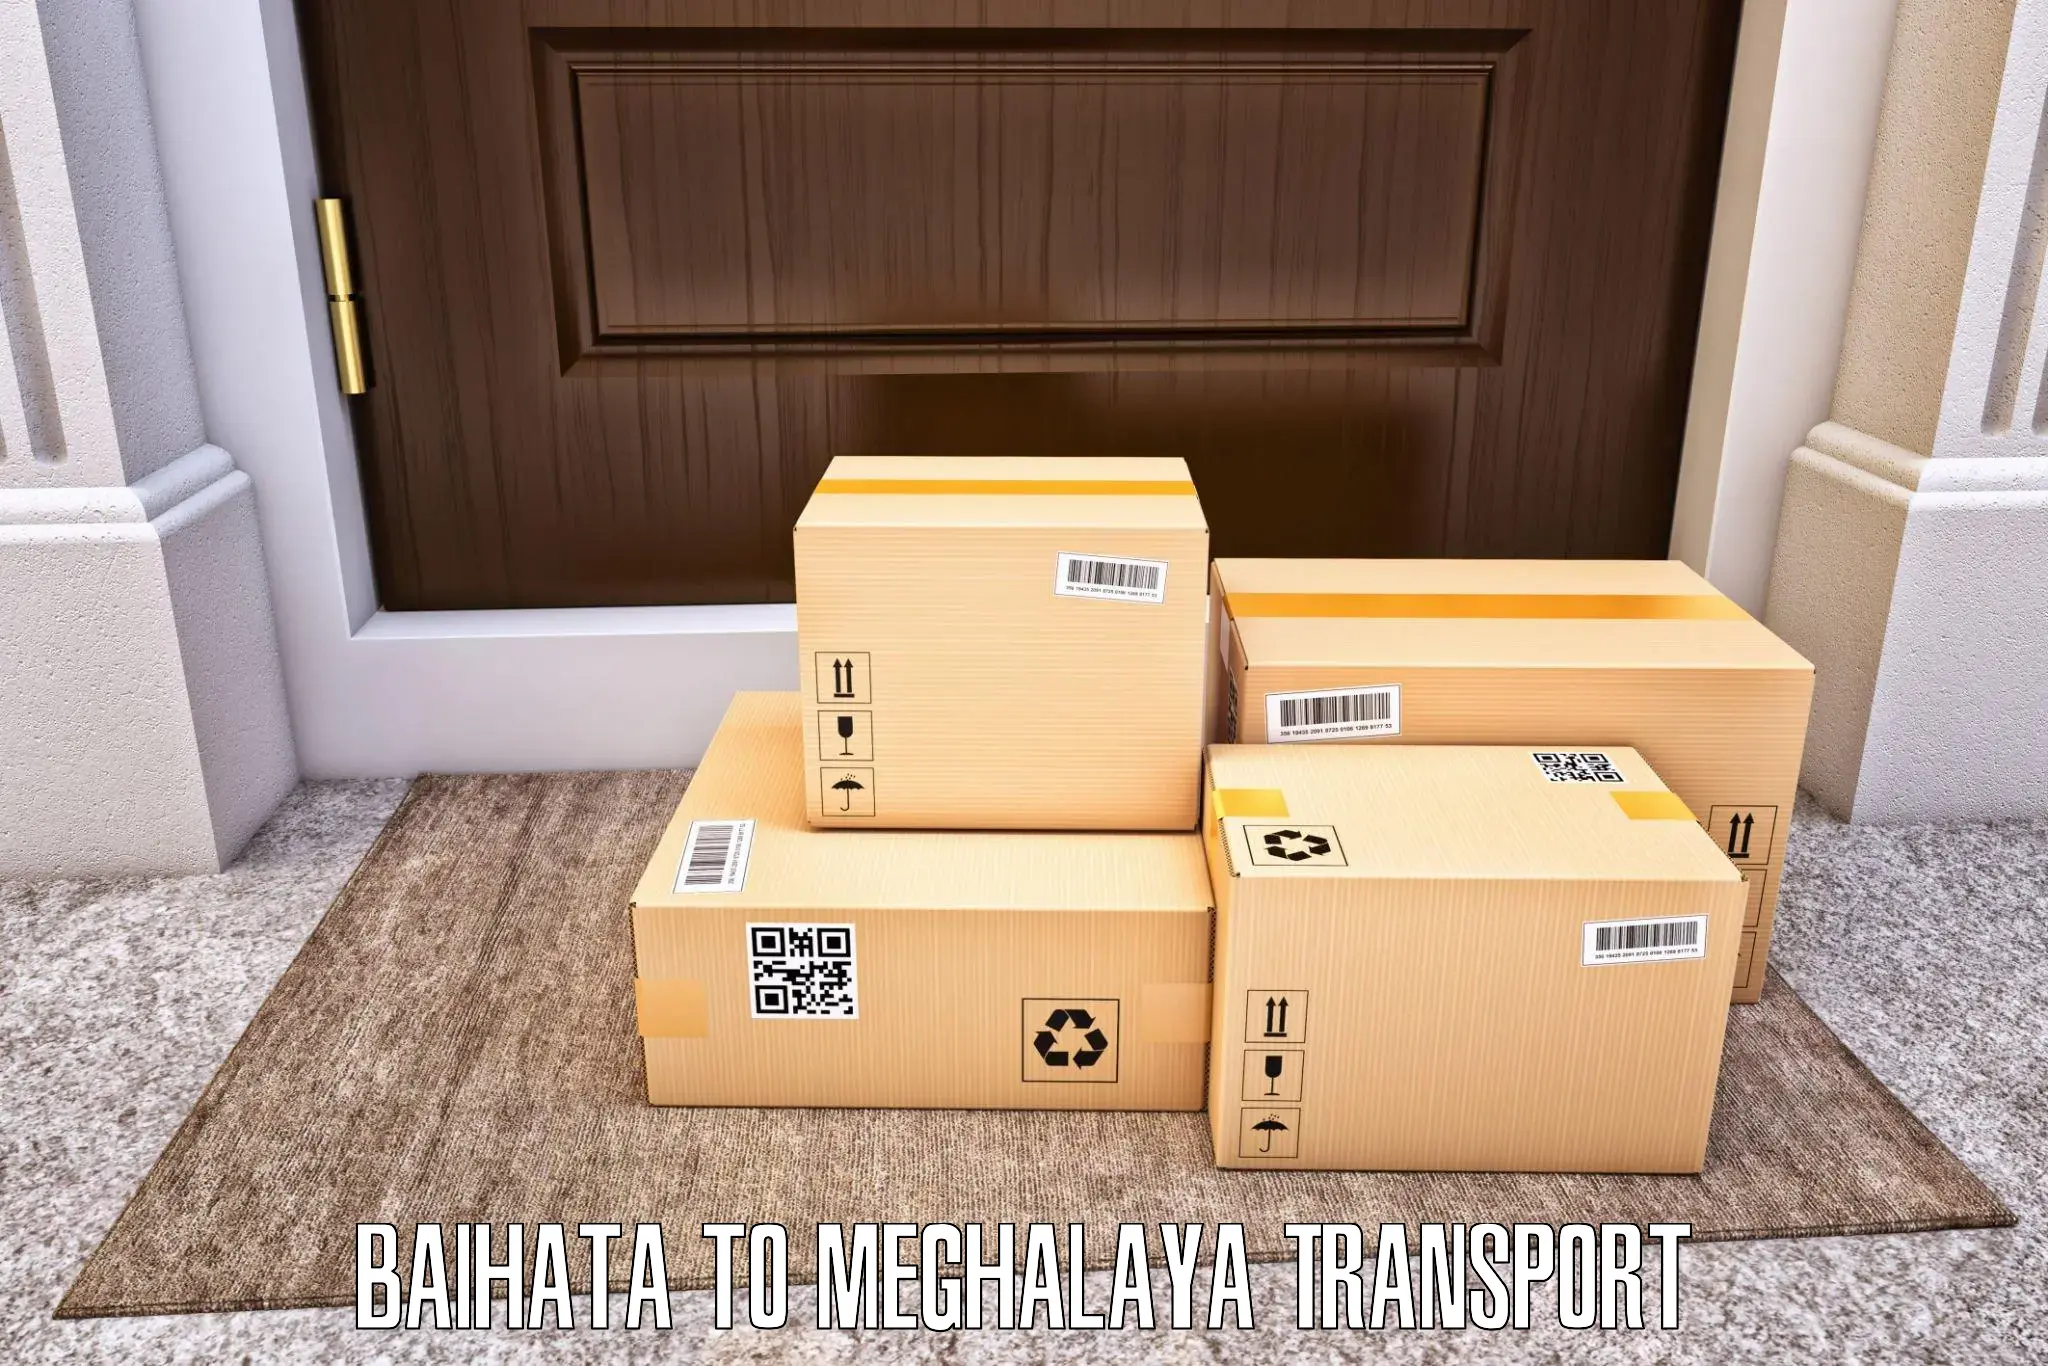 Furniture transport service in Baihata to NIT Meghalaya